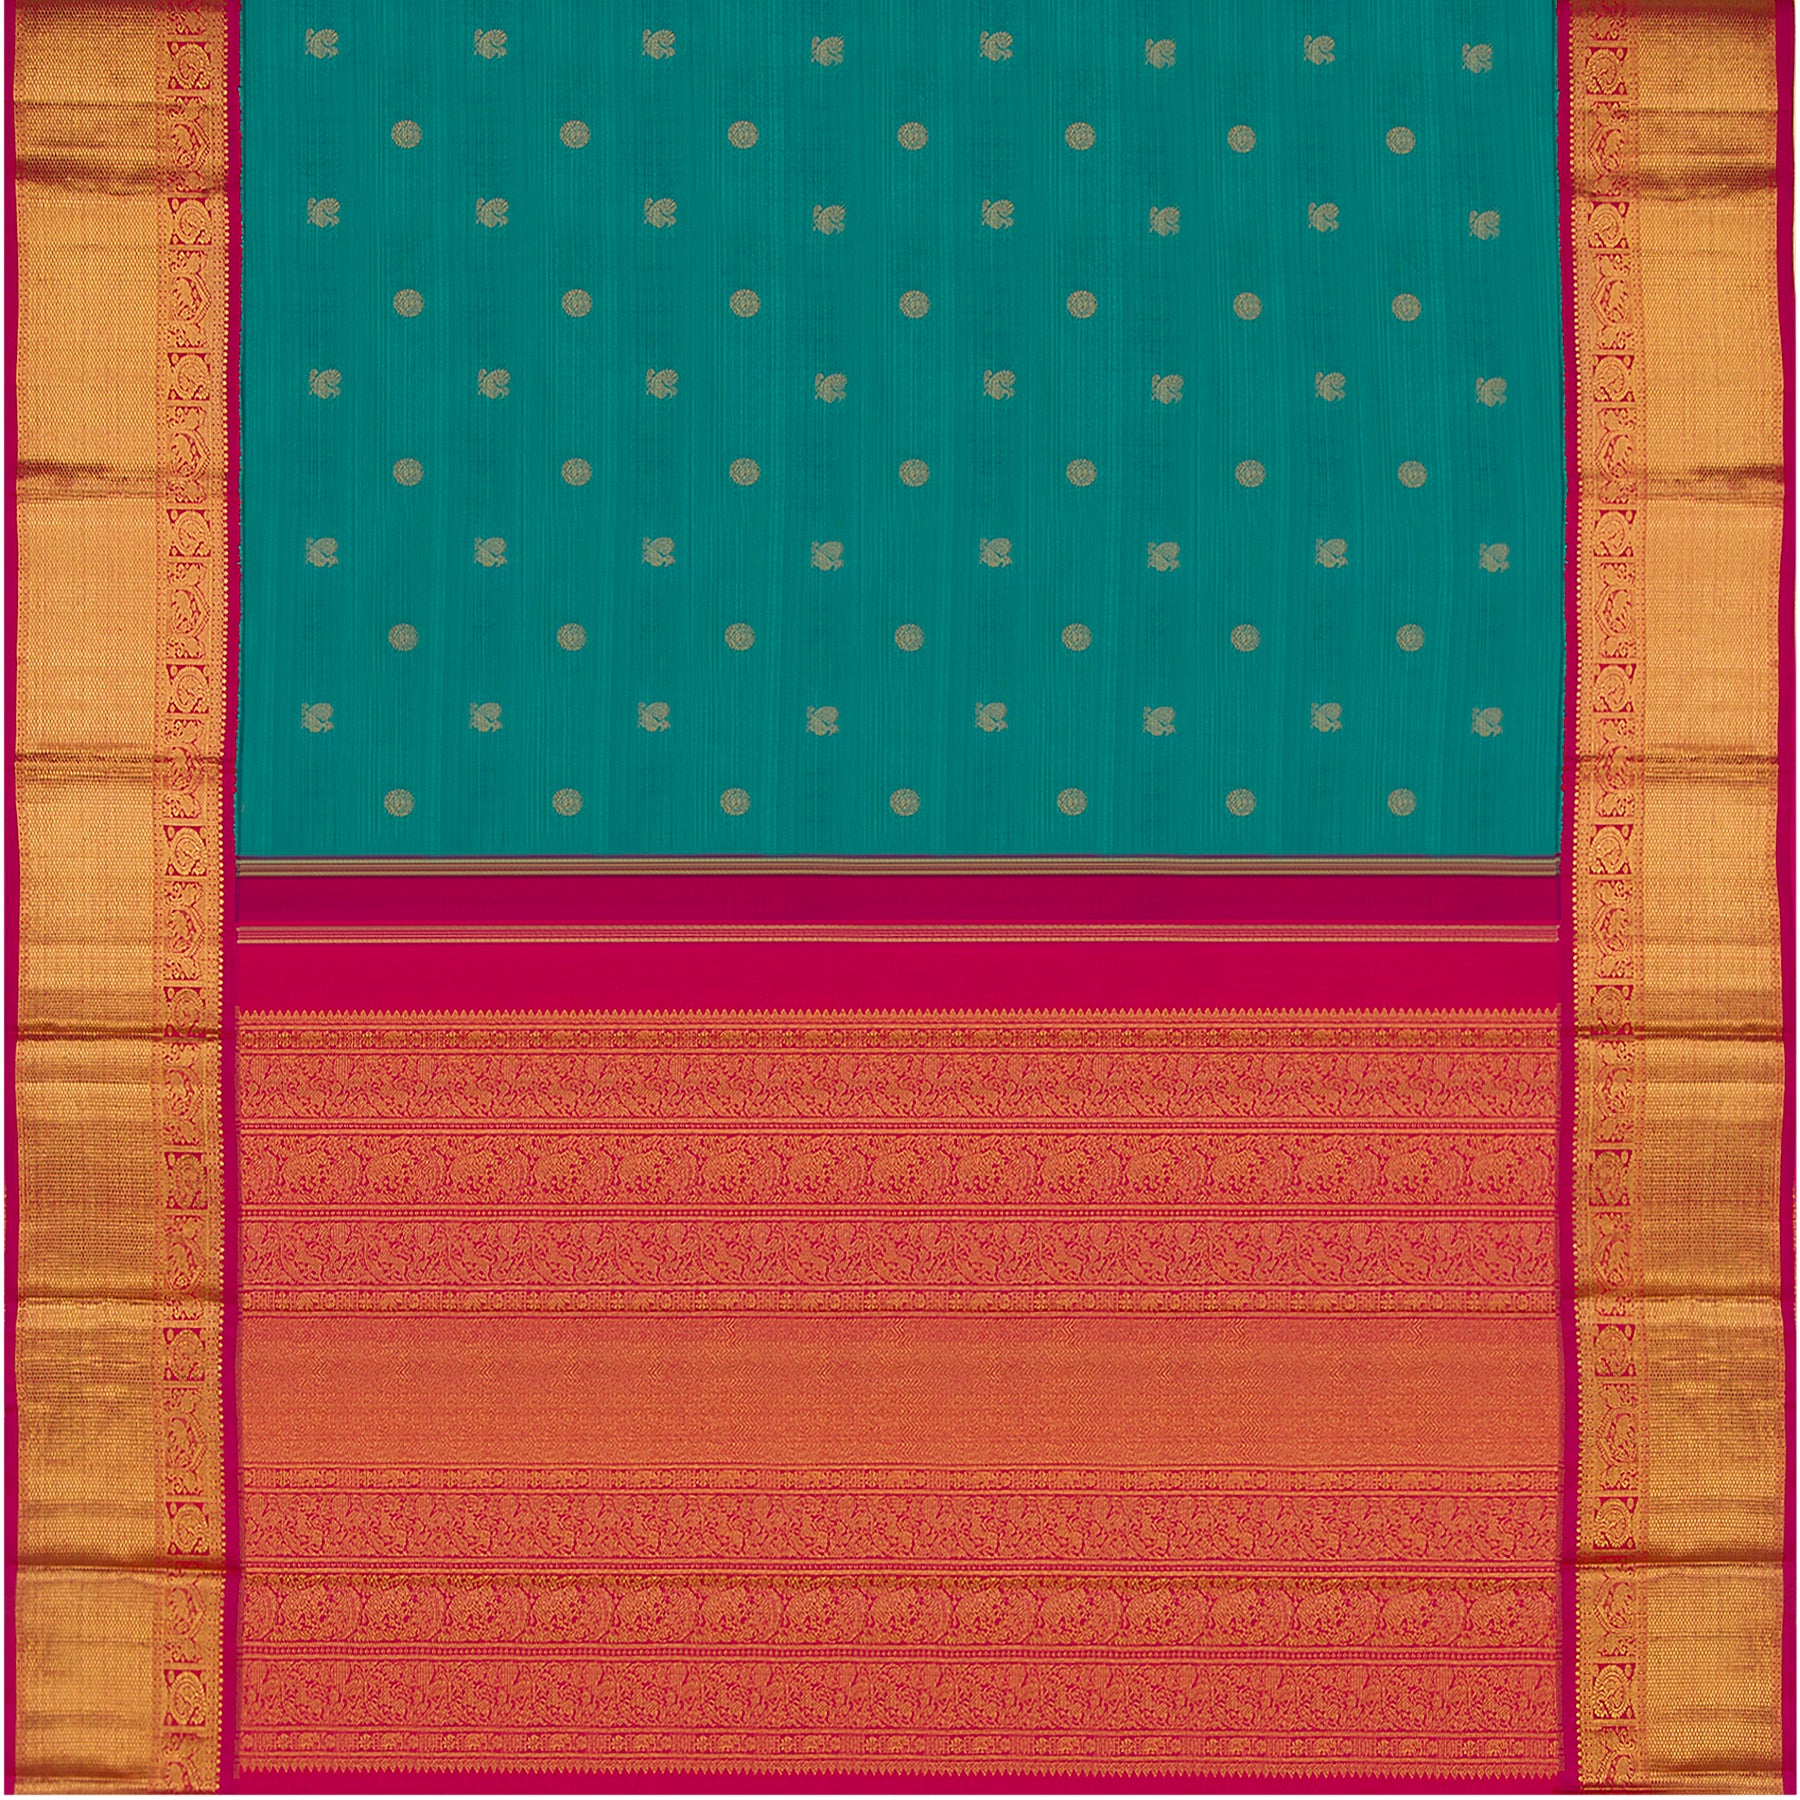 Kanakavalli Kanjivaram Silk Sari 22-110-HS001-07532 - Full View